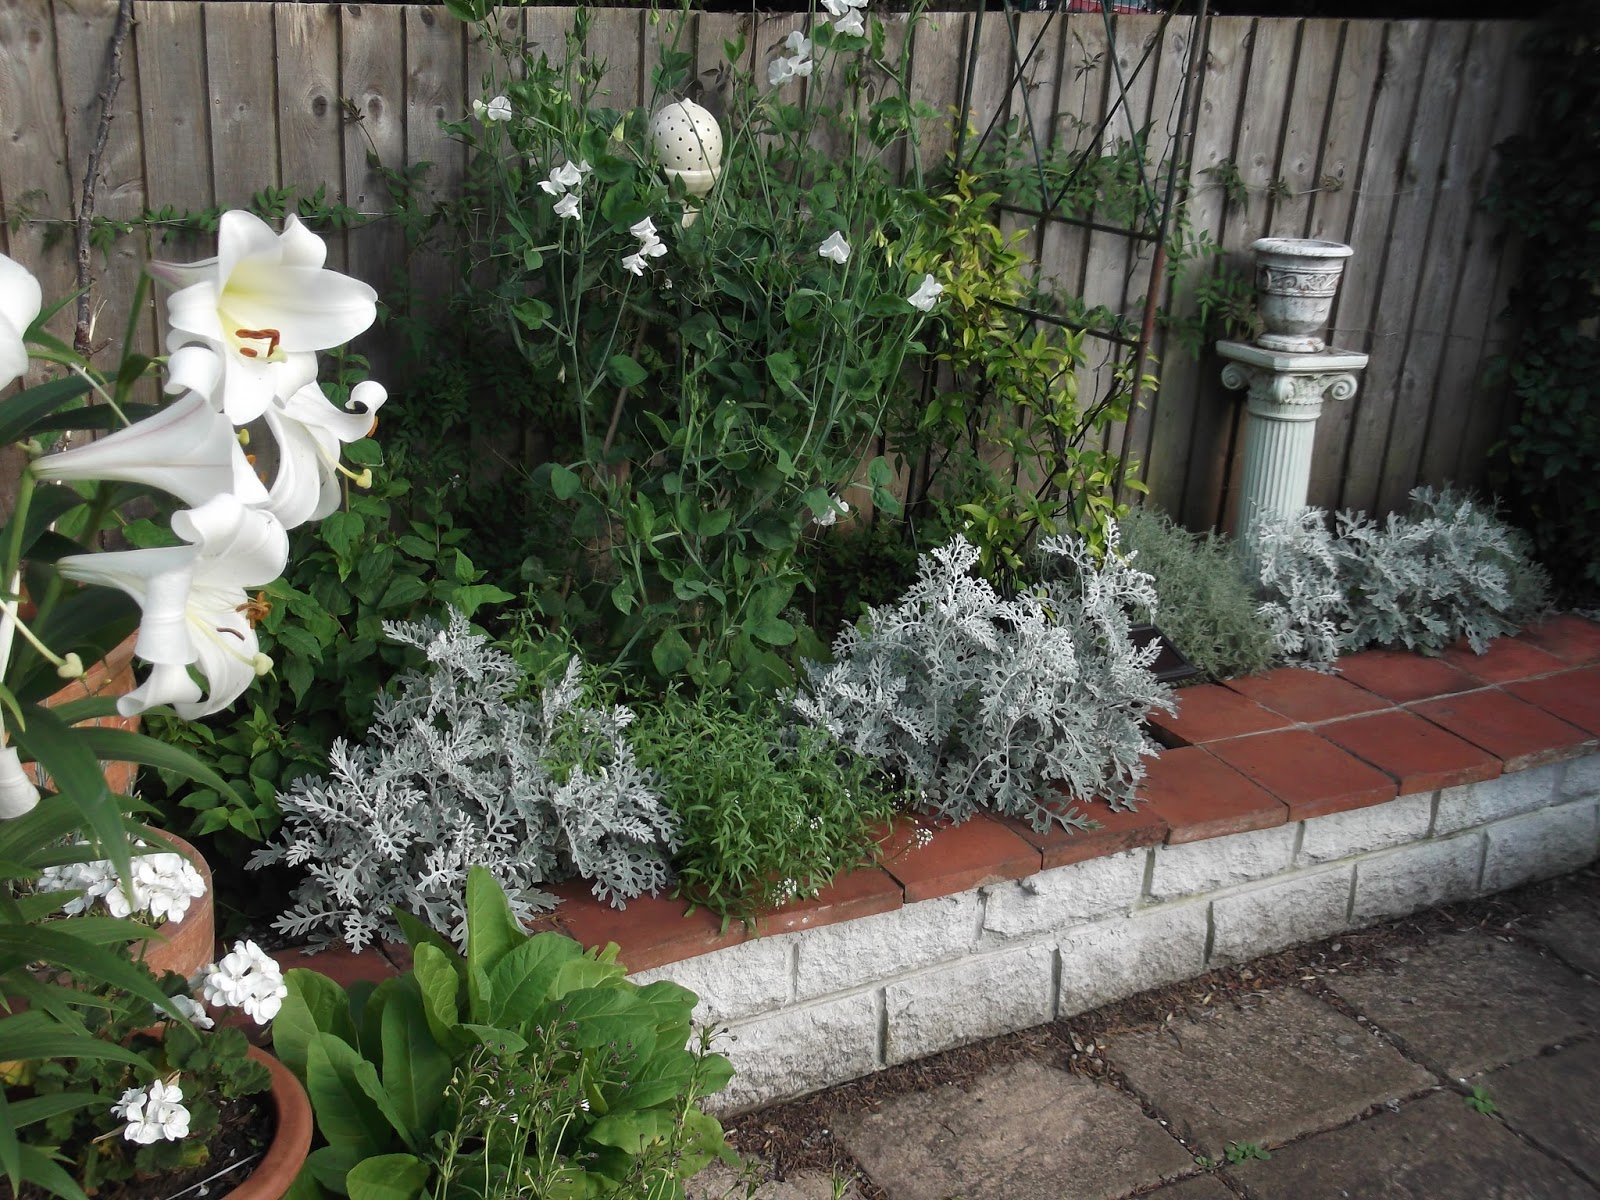 Night Garden #1 Fragrant White Flowers-4 packs/price 3! 